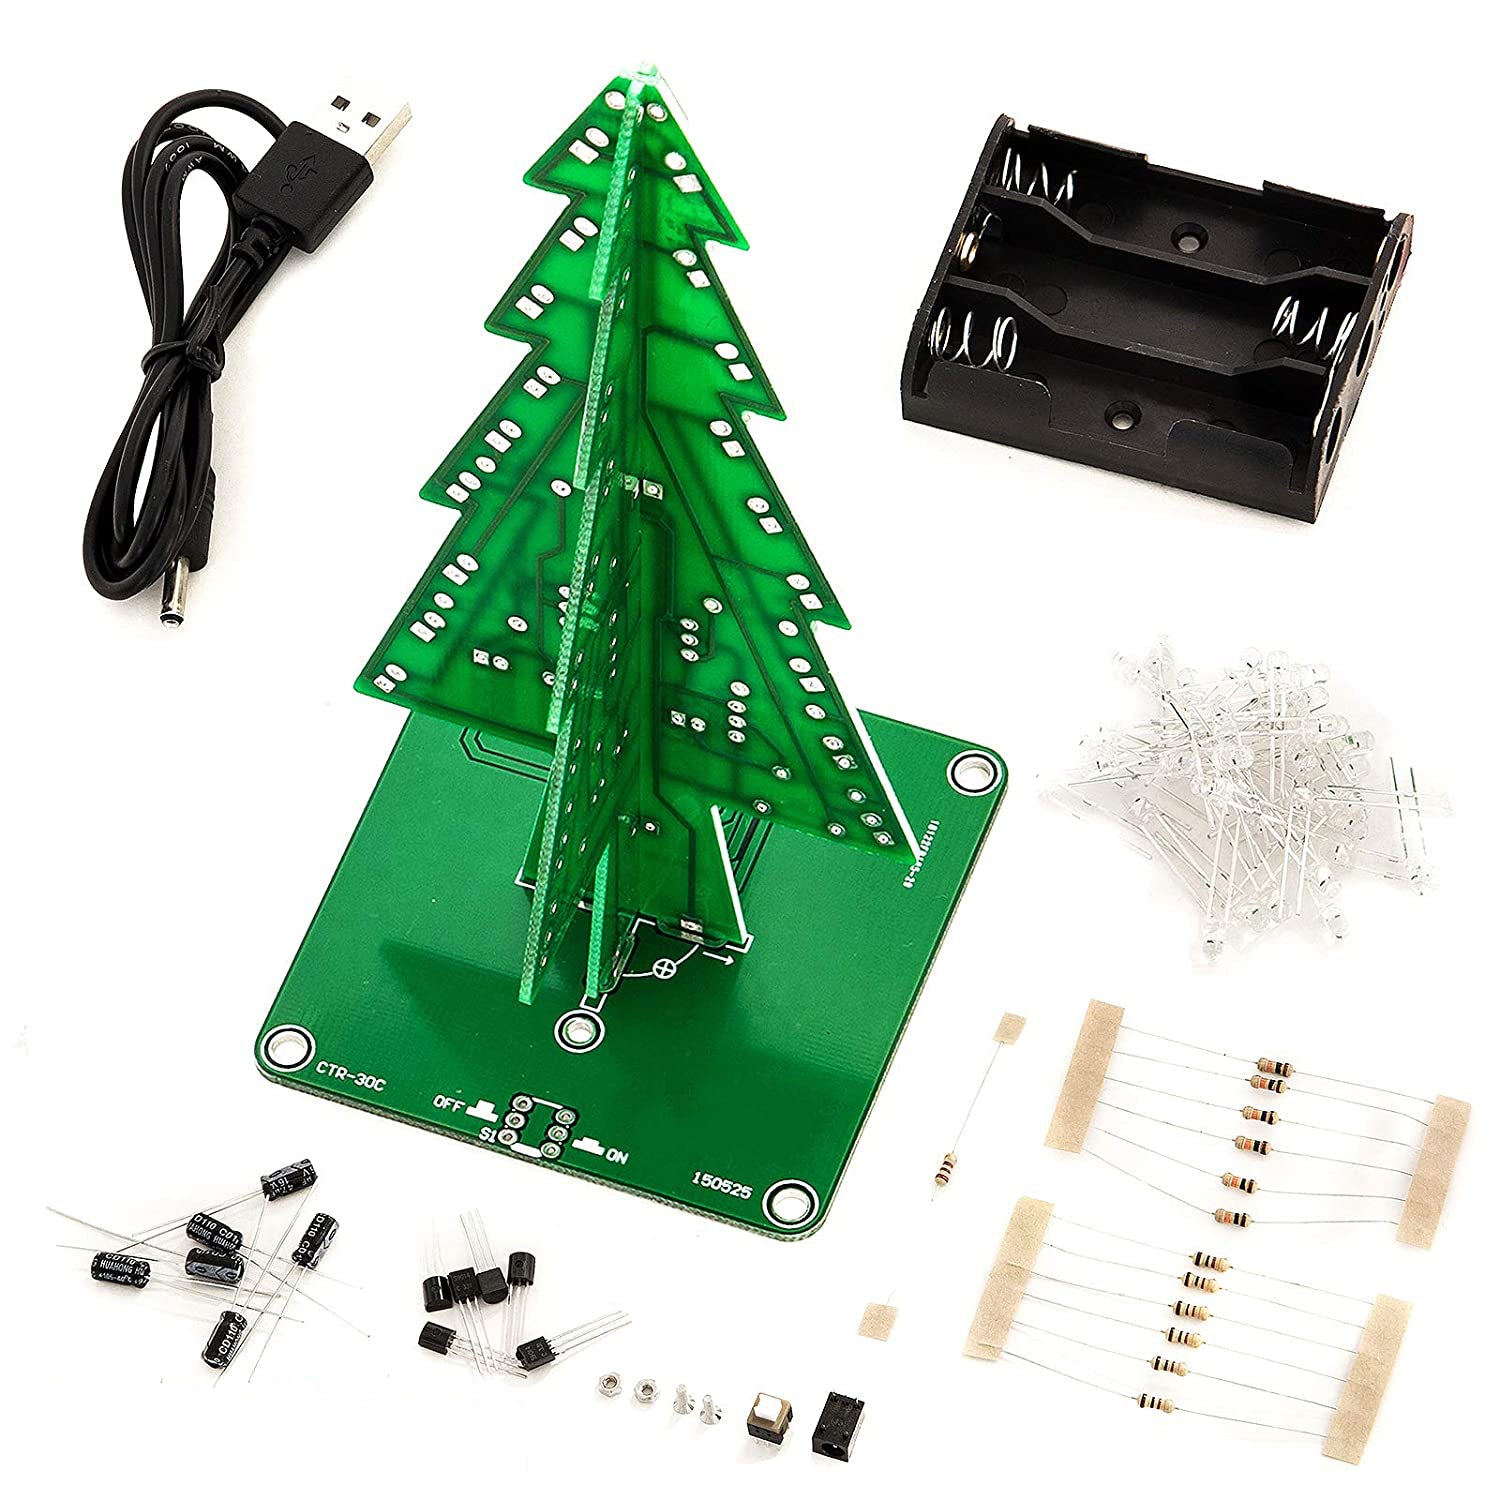 DIY LED Weihnachtsbaum Kit zum Löten mit bunt blinkenden Lichtern - AZ-Delivery